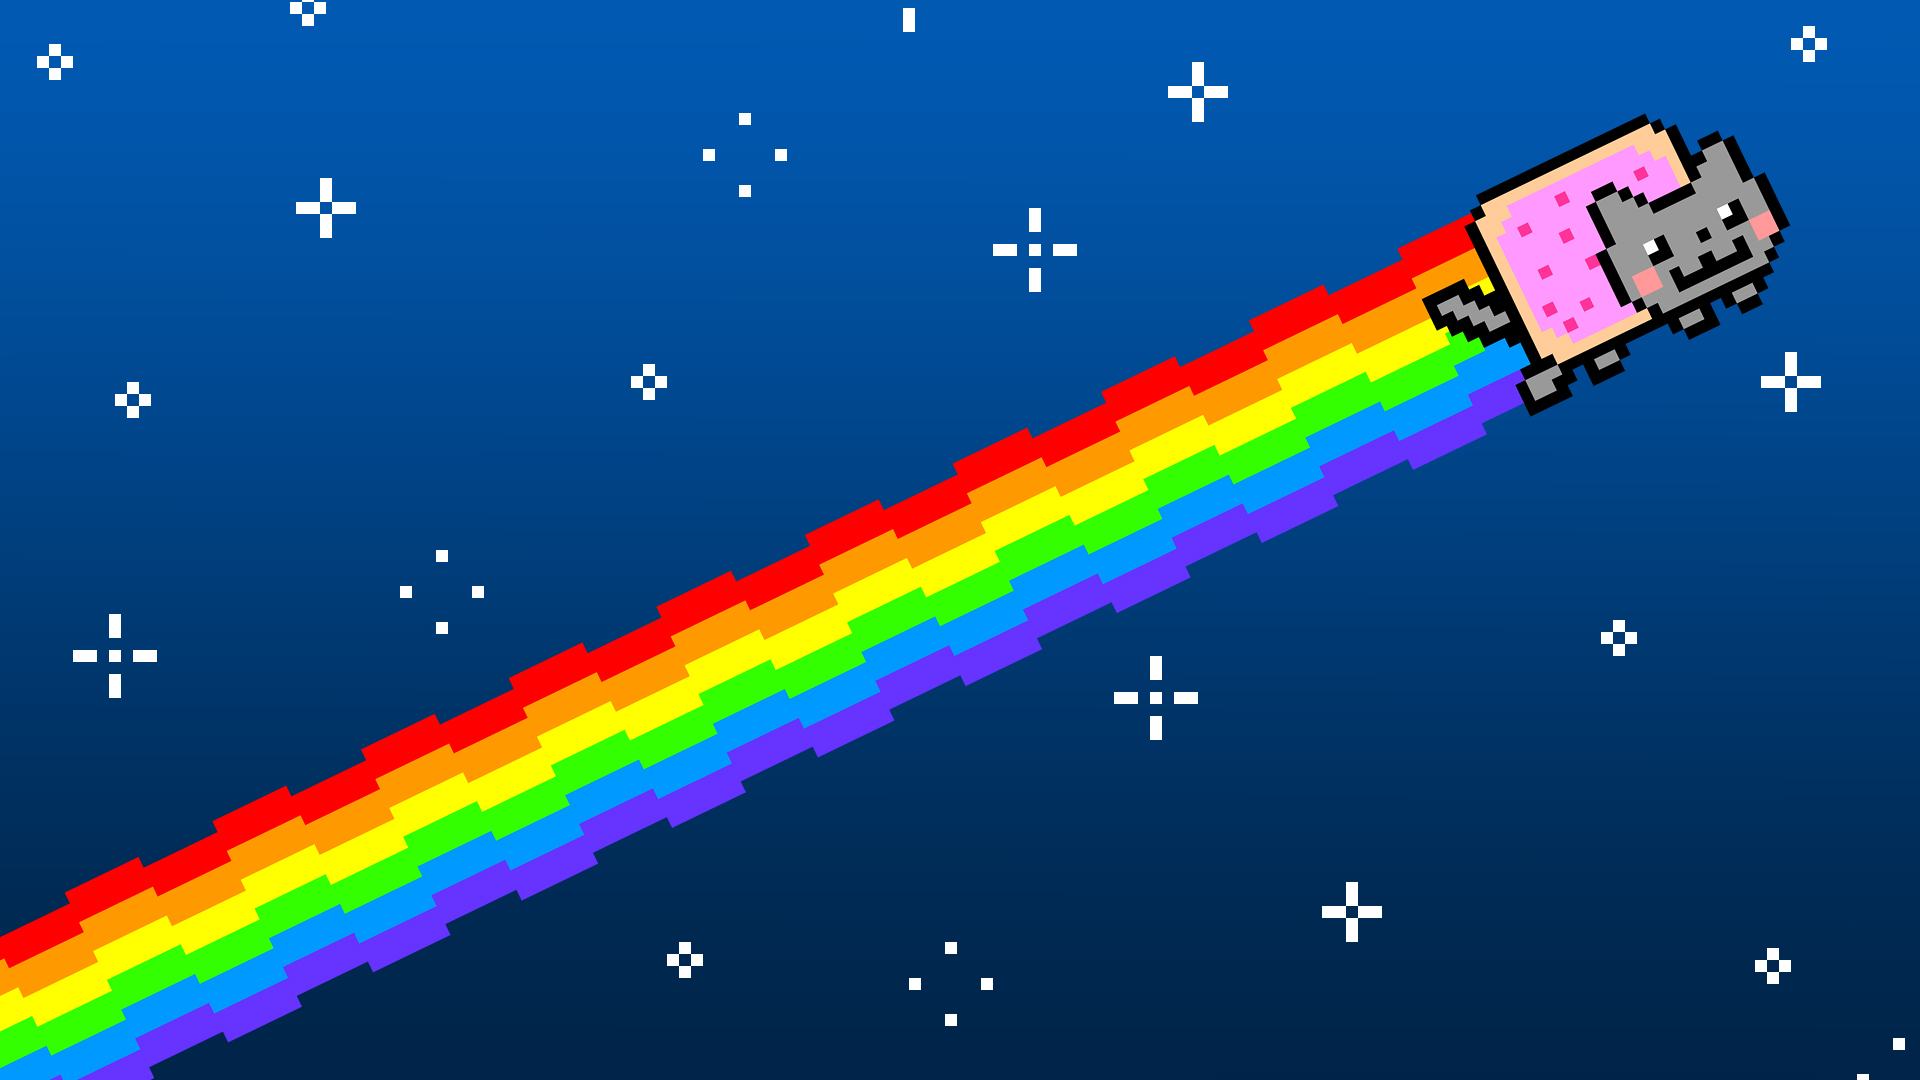  Nyan  Cat  Wallpapers  Free Download PixelsTalk Net